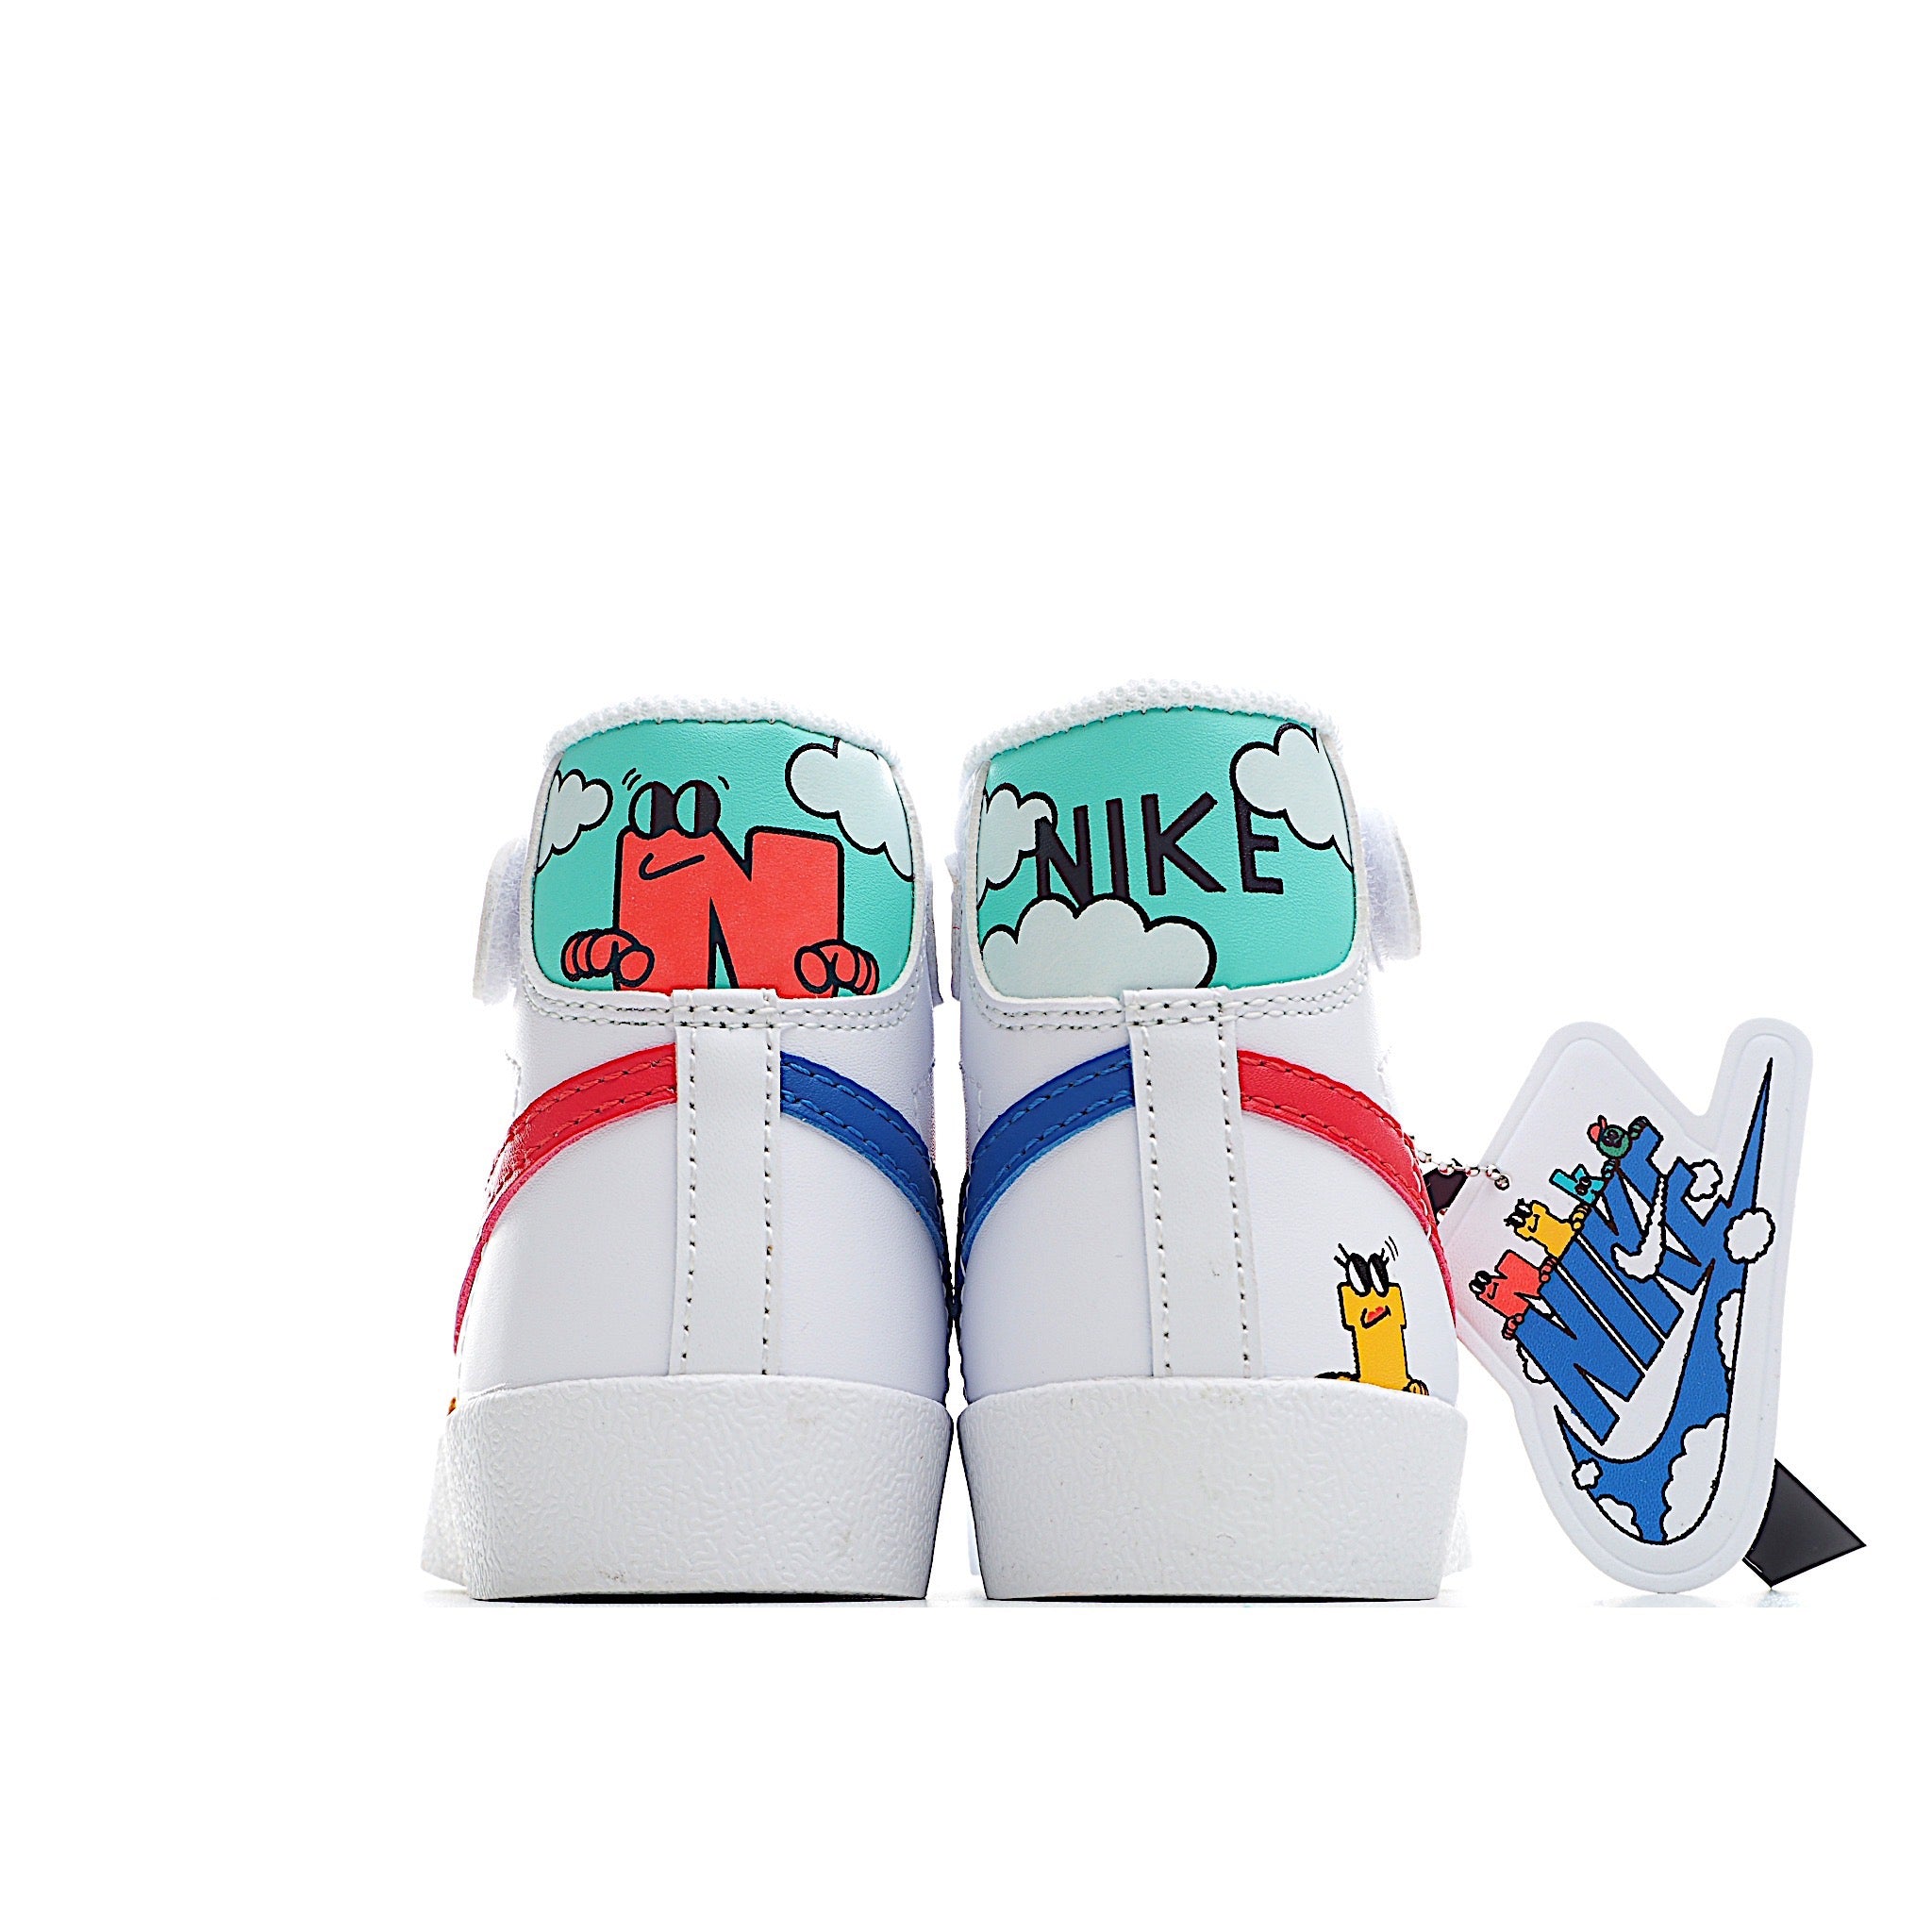 Nike high blazer alphabets shoes